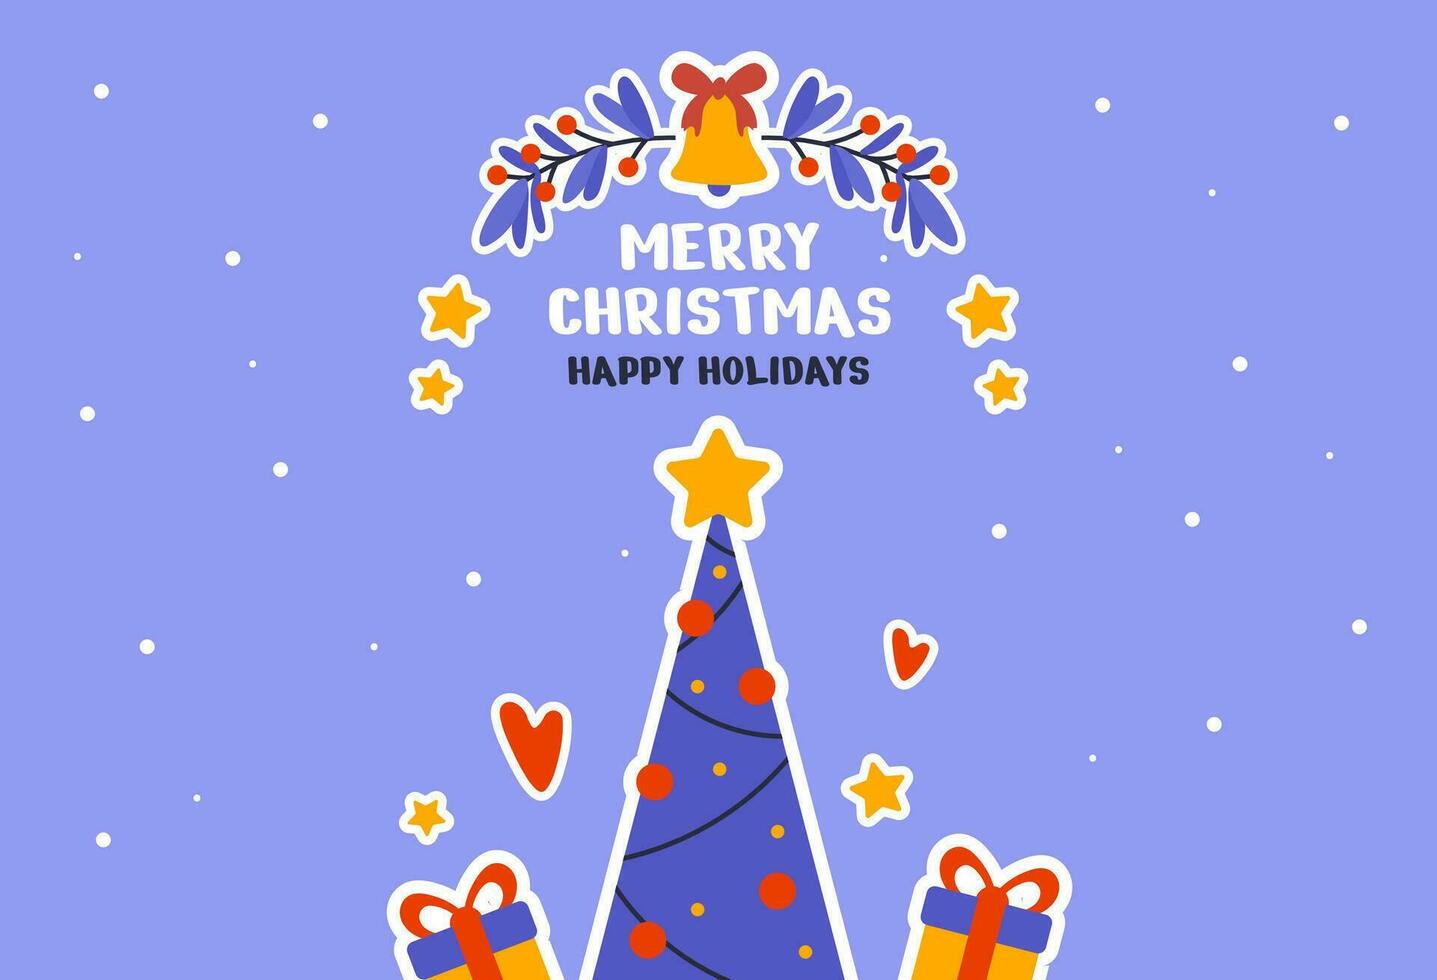 contento nuevo año y alegre Navidad fiesta tarjeta. tarjeta postal plantillas con Navidad árbol, regalos, medias, Navidad palos vector